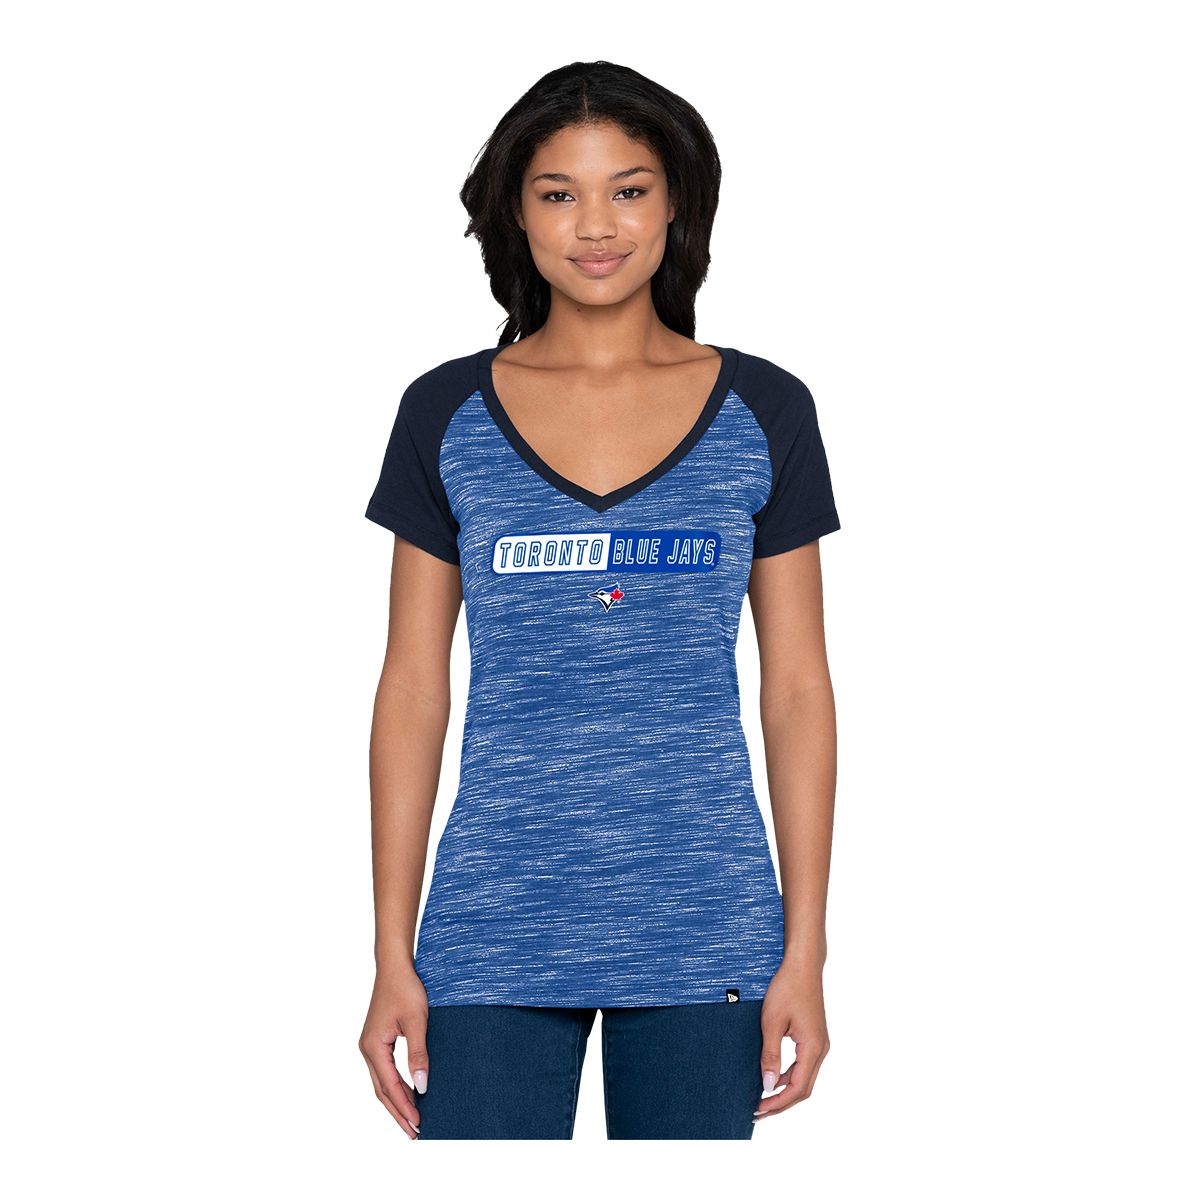 MLB Toronto Blue Jays Boys' V-Neck T-Shirt - XS